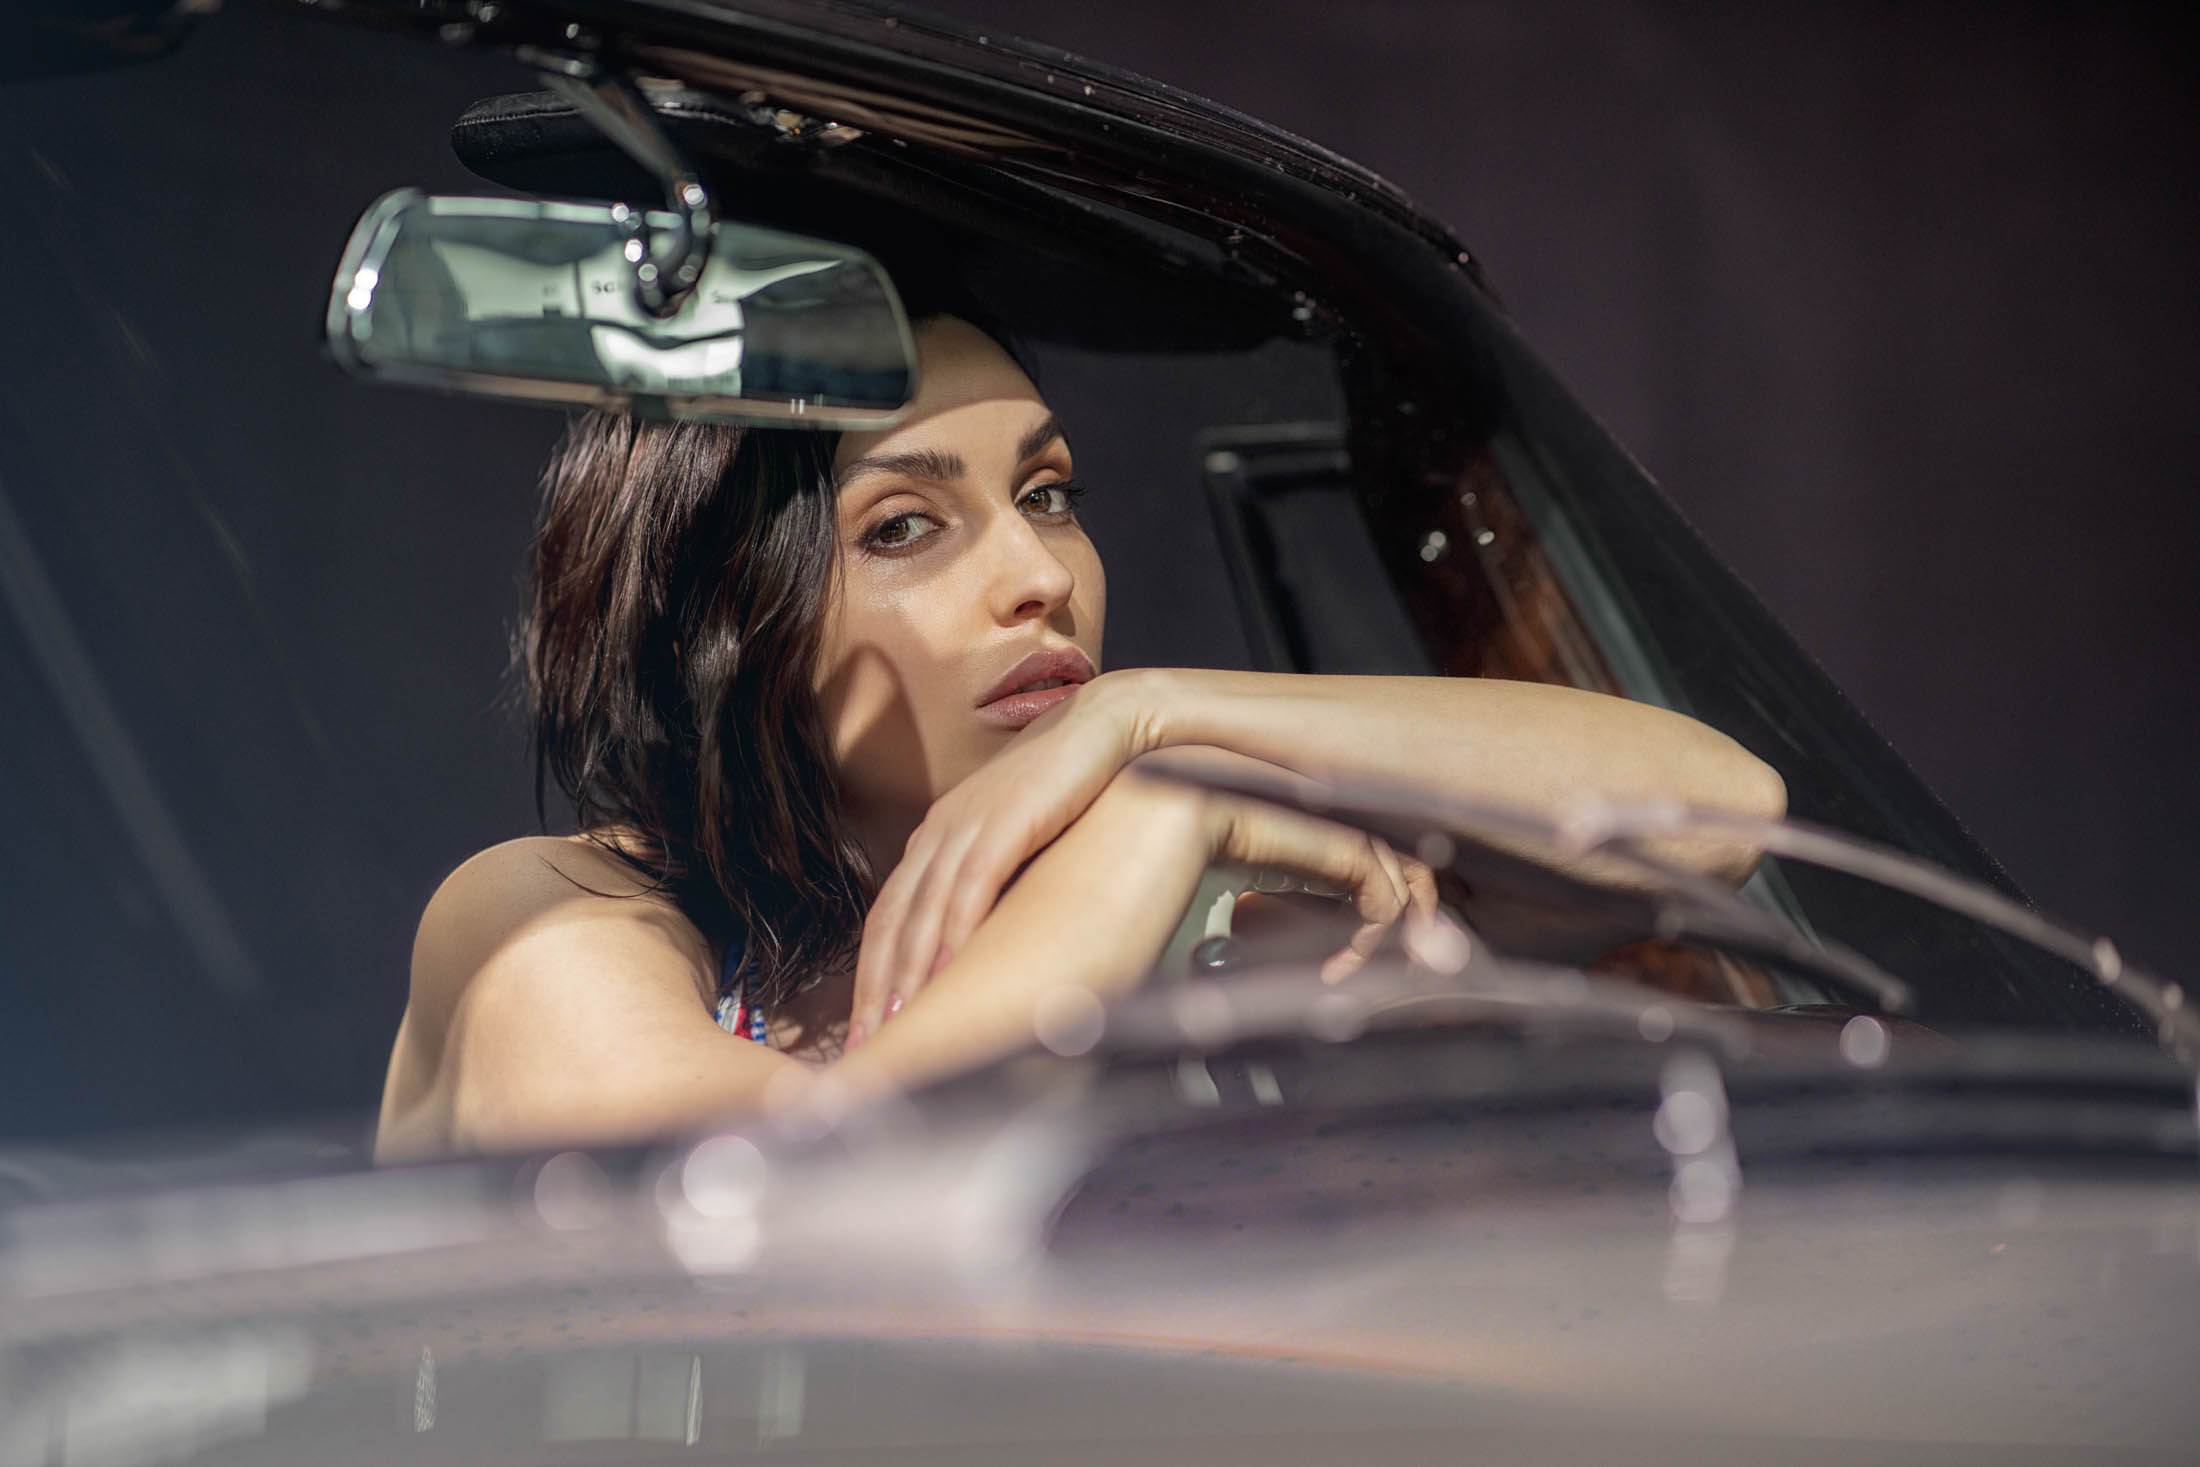 Eine Frau mit dunklem Haar stützt ihr Kinn auf ihre Hände, während sie auf dem Fahrersitz eines Autos sitzt und mit nachdenklichem Gesichtsausdruck durch die Windschutzscheibe blickt. © Fotografie Tomas Rodriguez